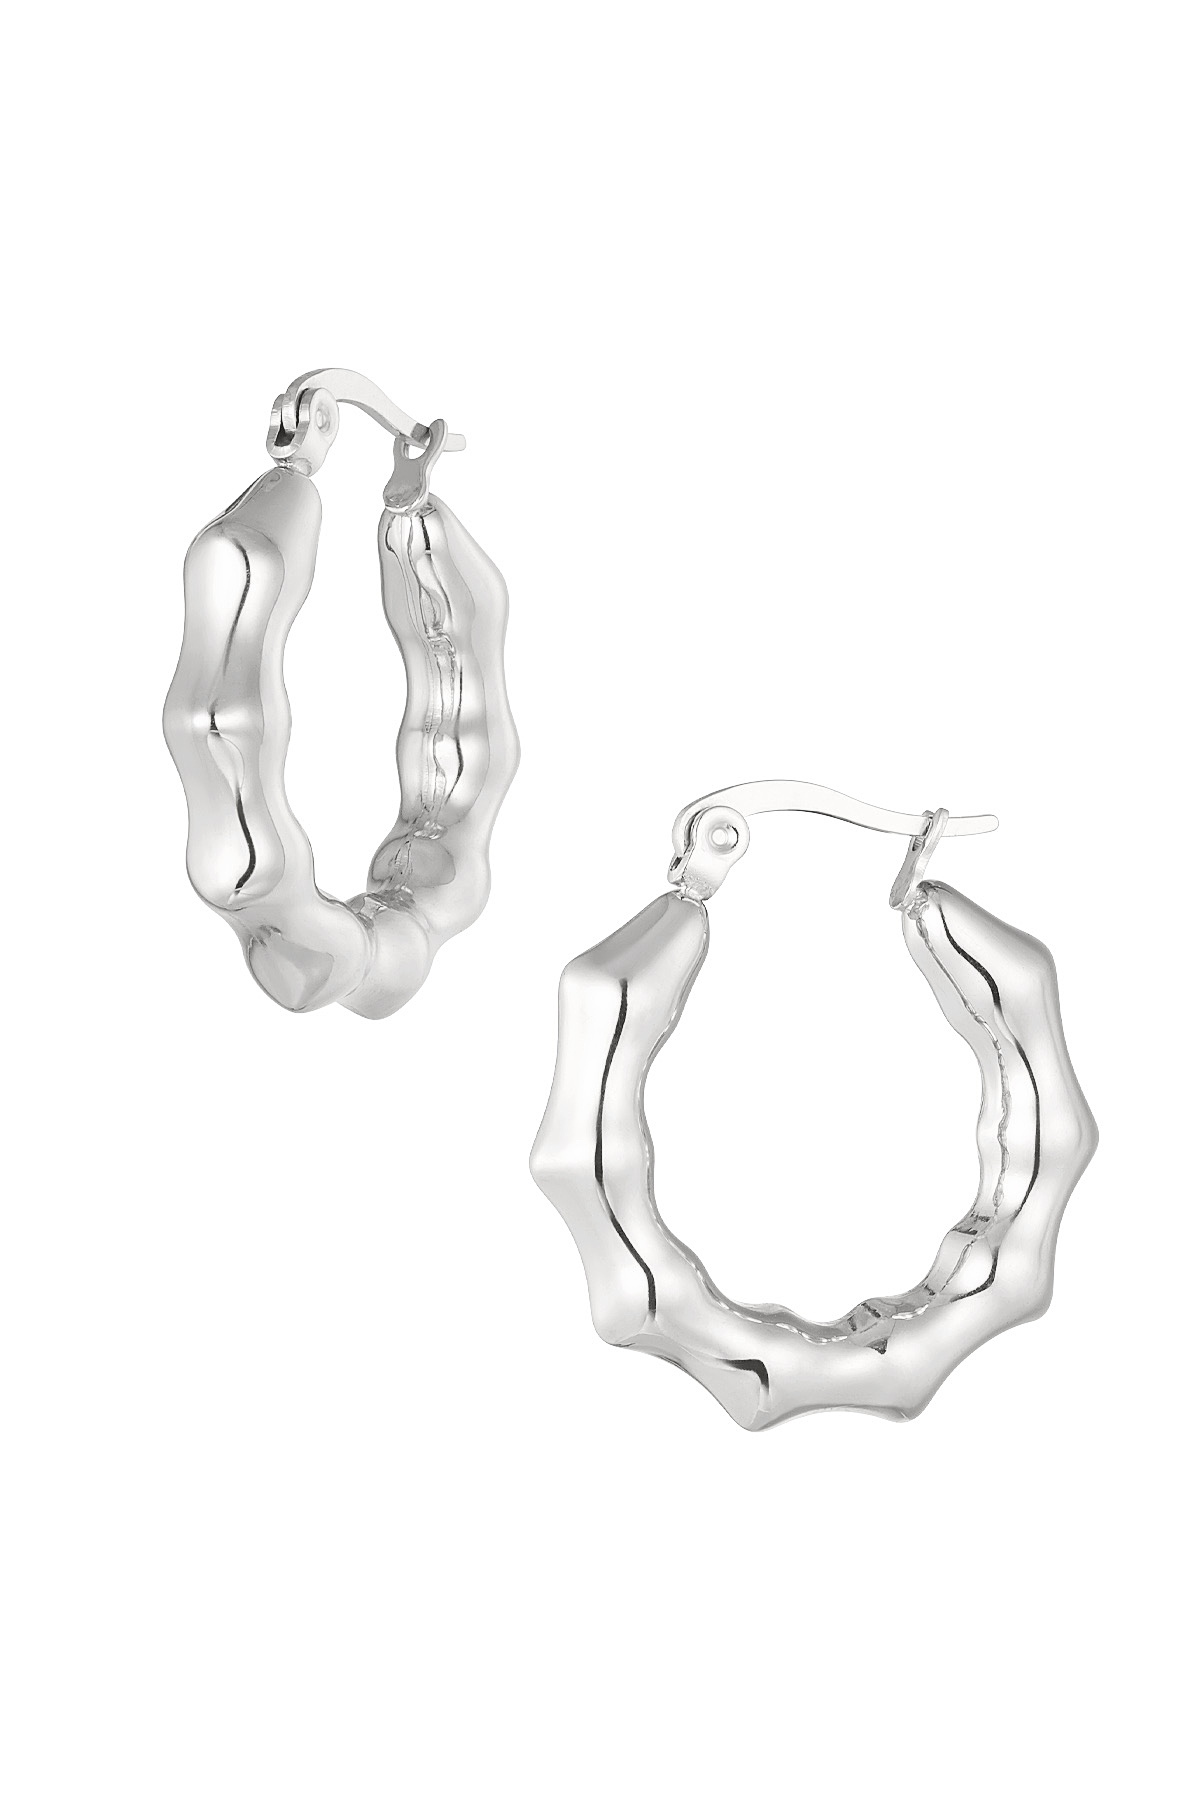 Earrings aesthetic bubble - silver h5 